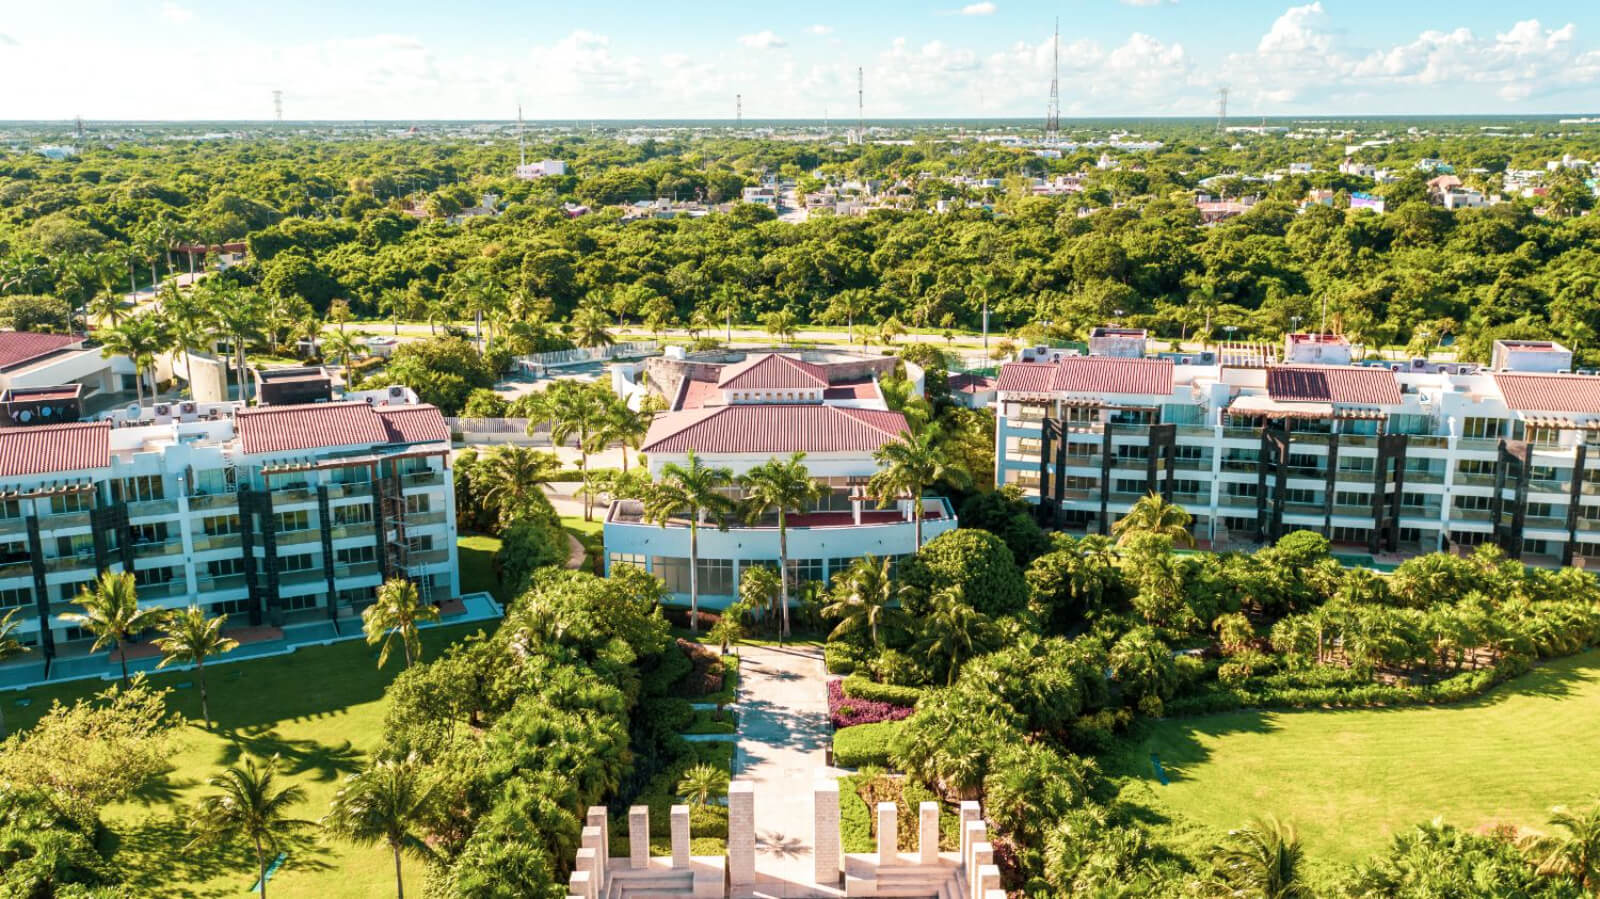 Penthouse terraza de 140 m2, vista al campo de golf, cuarto de servicio, casa club, cenotes, club de playa, parques, 2 estacionamientos tech